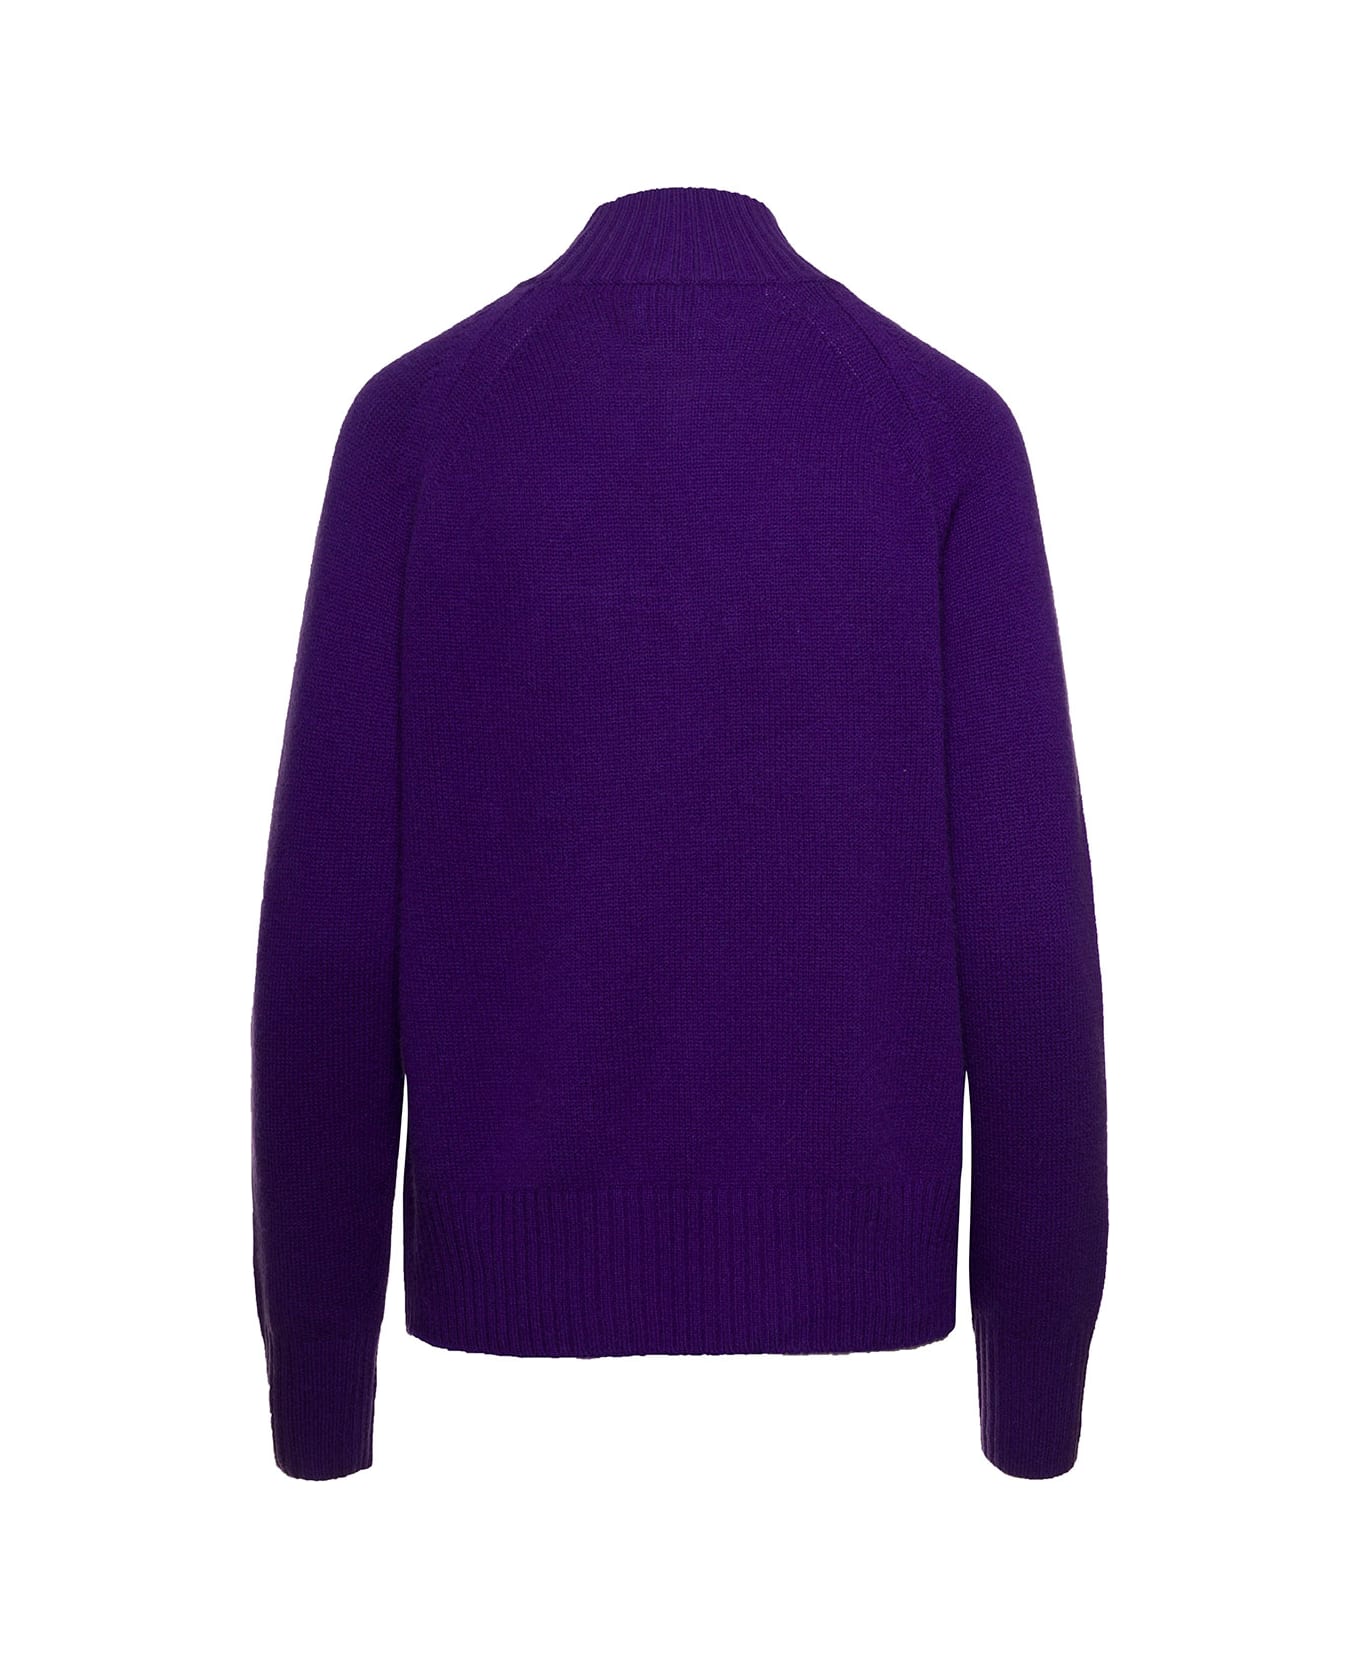 Allude Violet Mockneck Sweater With Ribbed Trim In Cashmere Woman - Violet ニットウェア